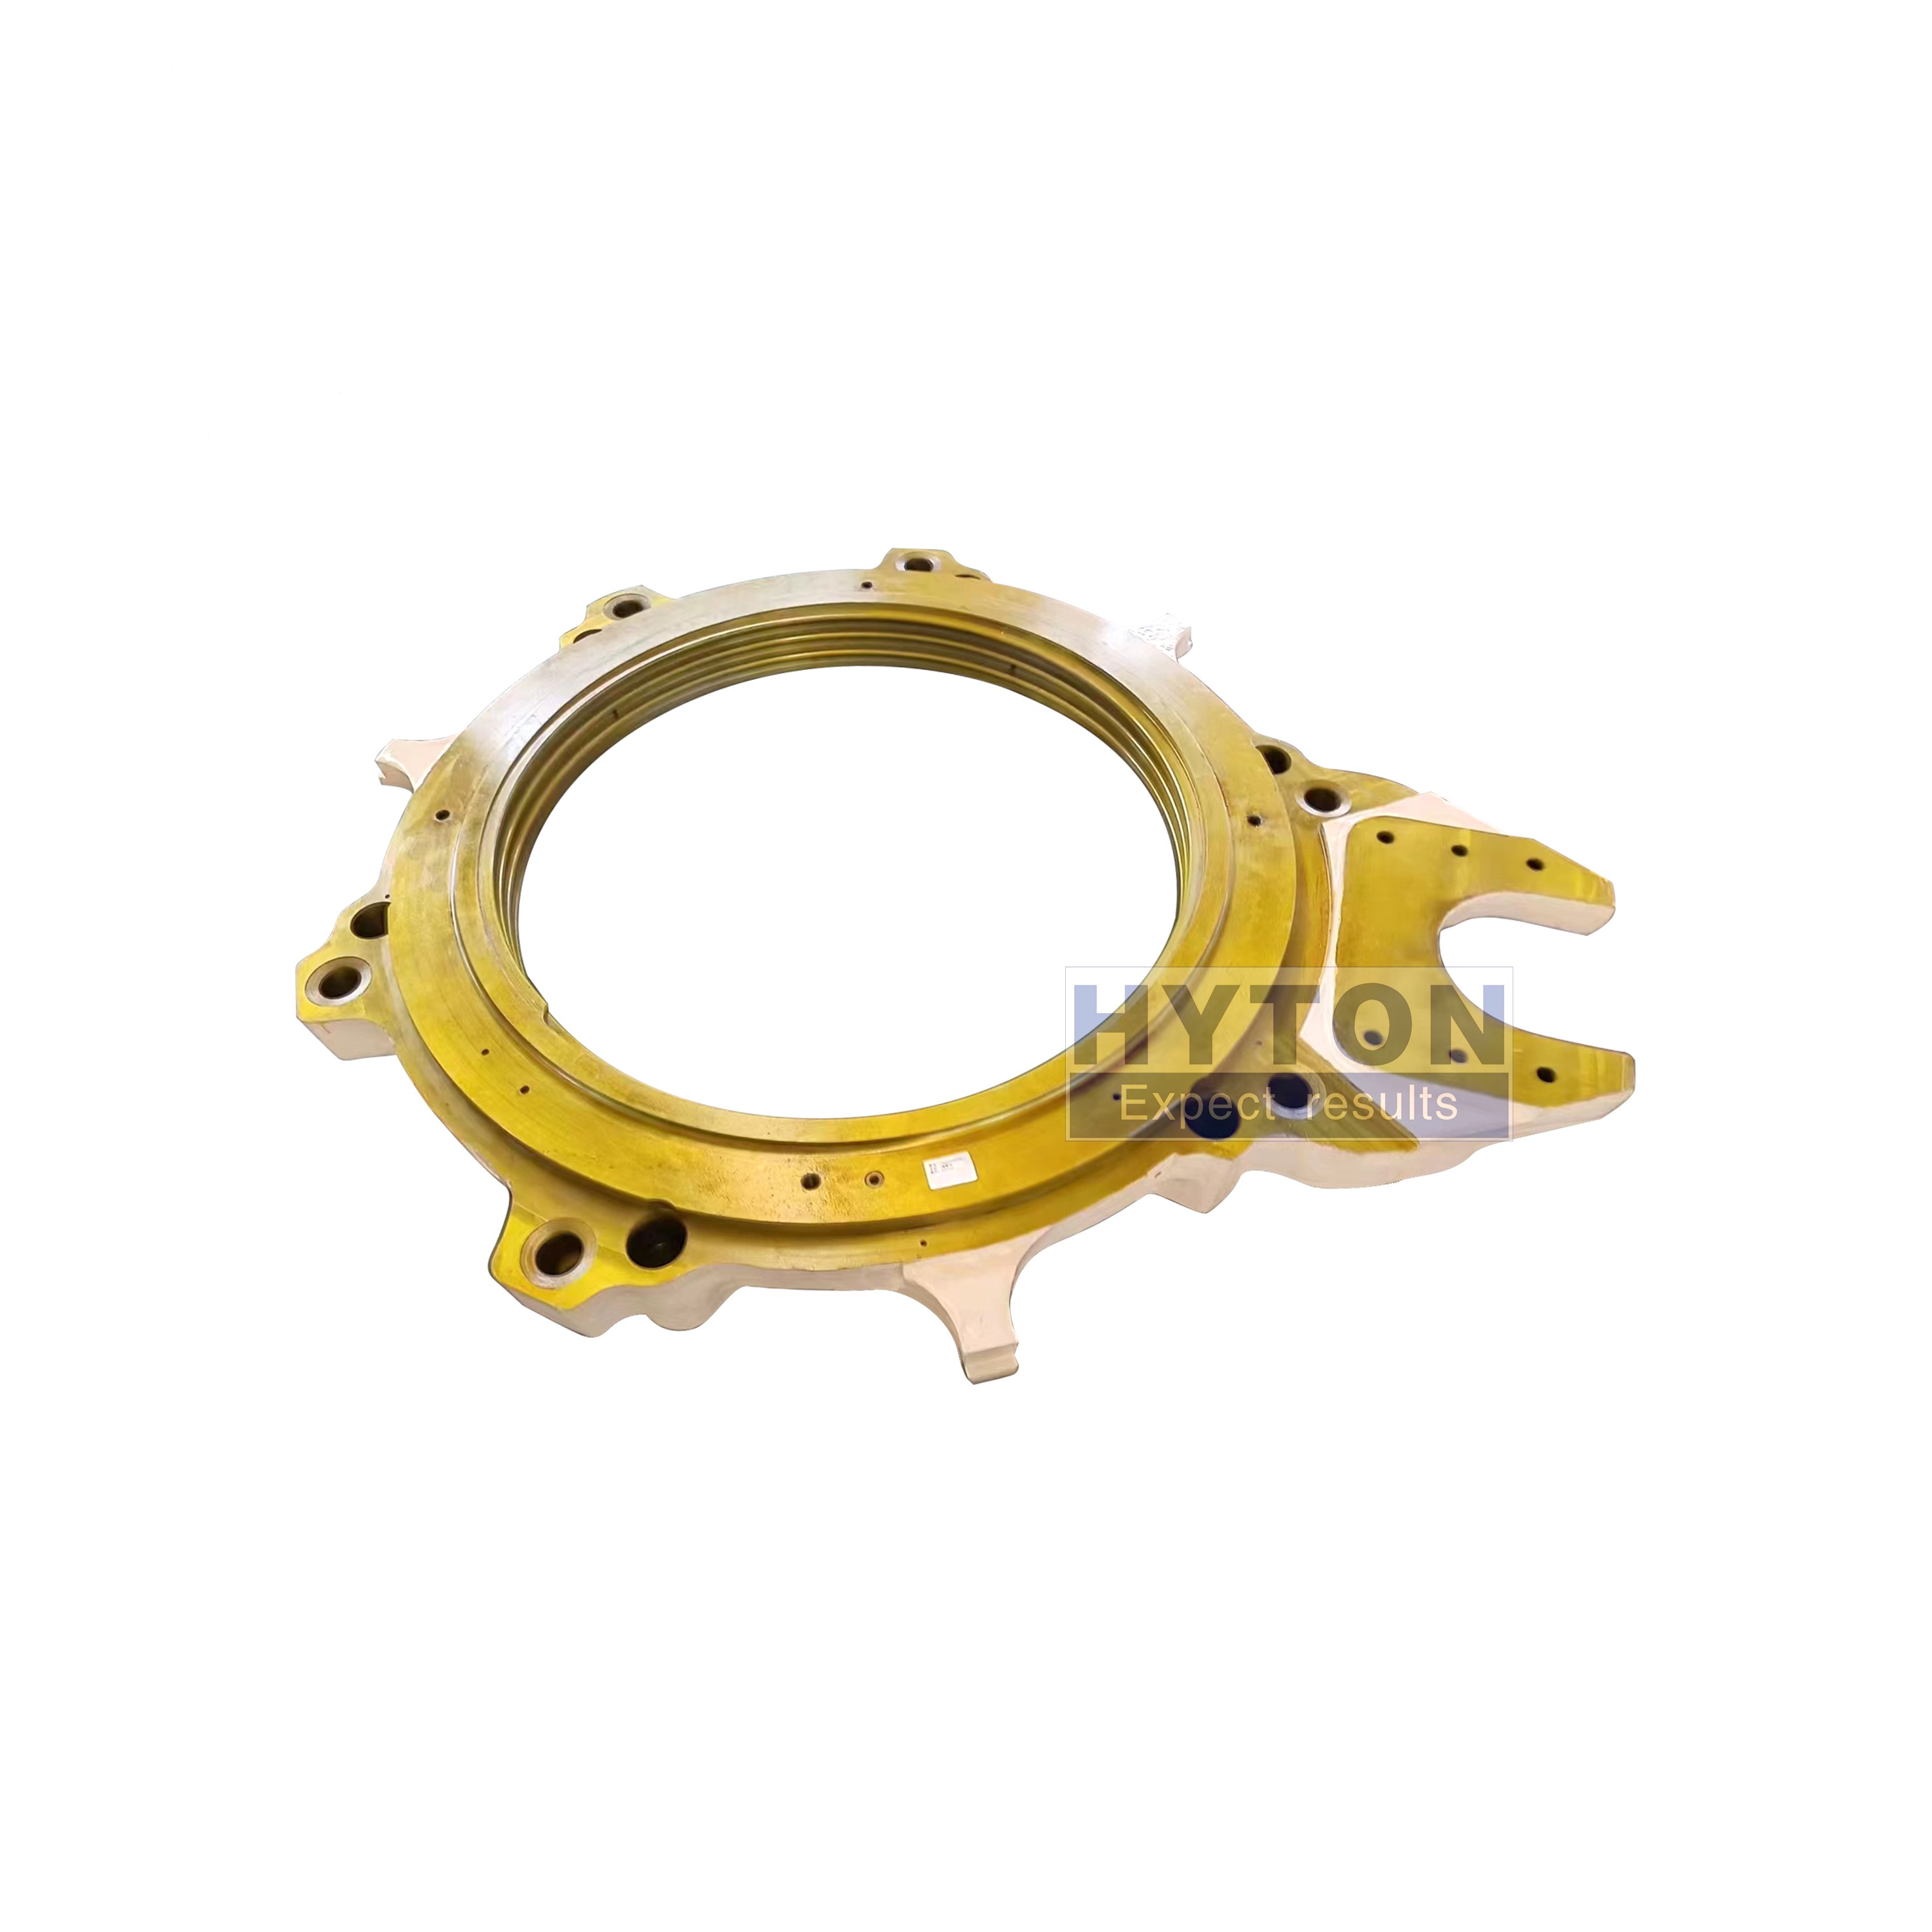 Traje de anillo de ajuste HP200 para piezas de repuesto de trituradores de cone metso